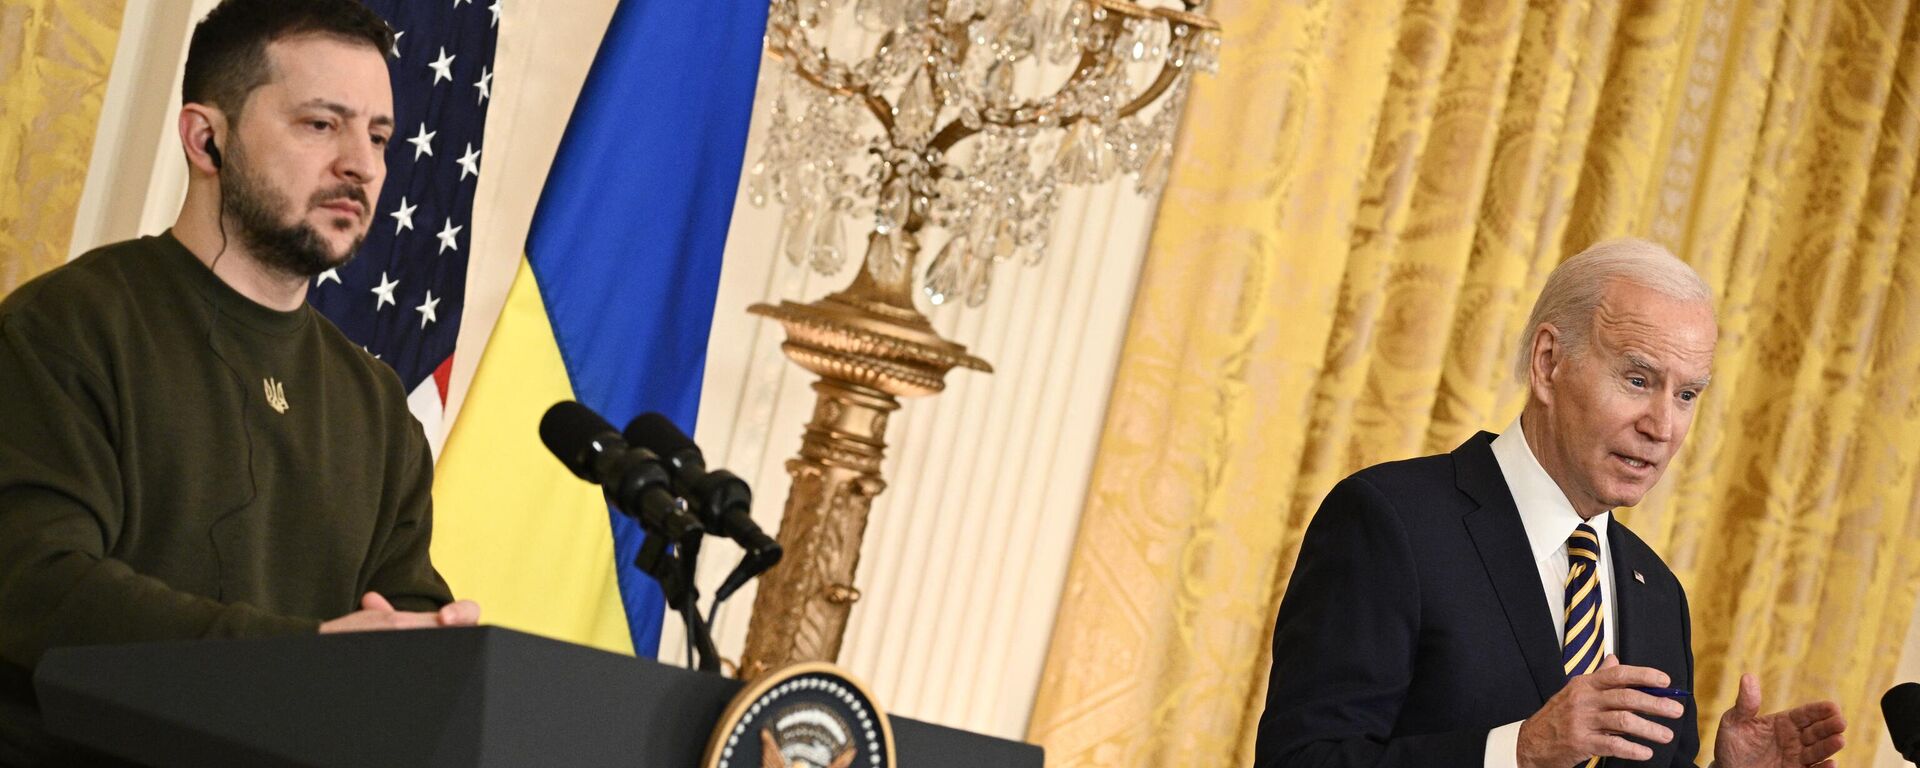 El presidente de Ucrania, Volodímir Zelenski, en conferencia de prensa conjunta con Joe Biden, en la Casa Blanca, el 21 de diciembre de 2022 - Sputnik Mundo, 1920, 21.12.2022